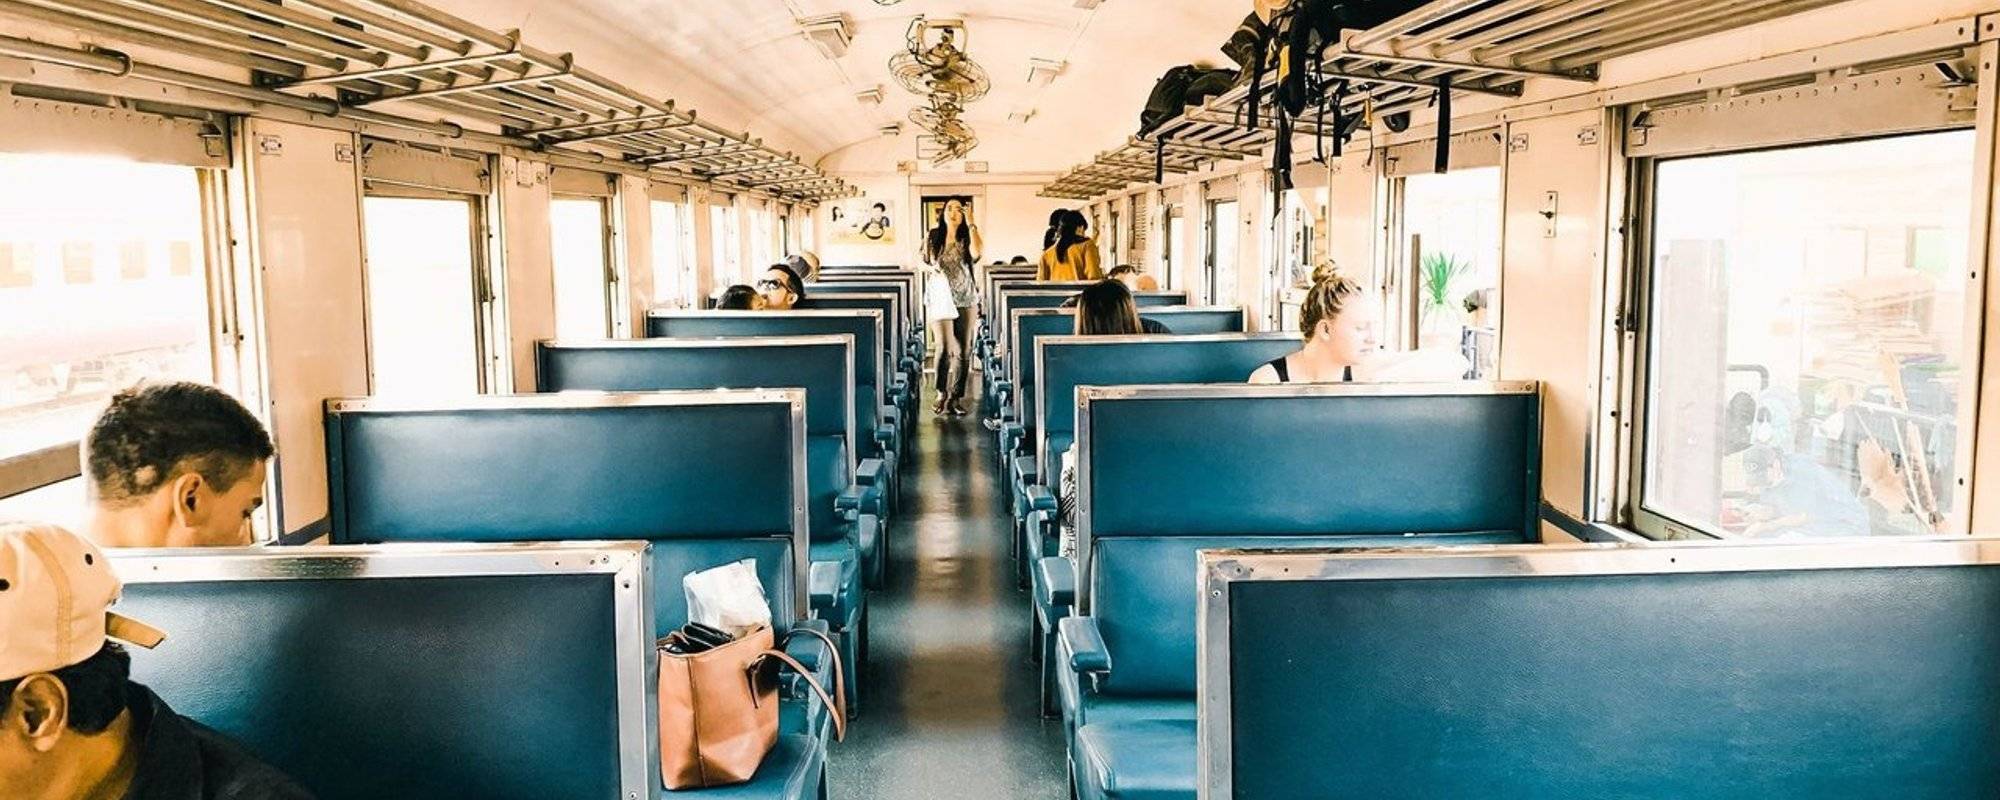 Kanchanaburi by train with Mystery girl [Day 1] - Kanchanaburi, Thailand